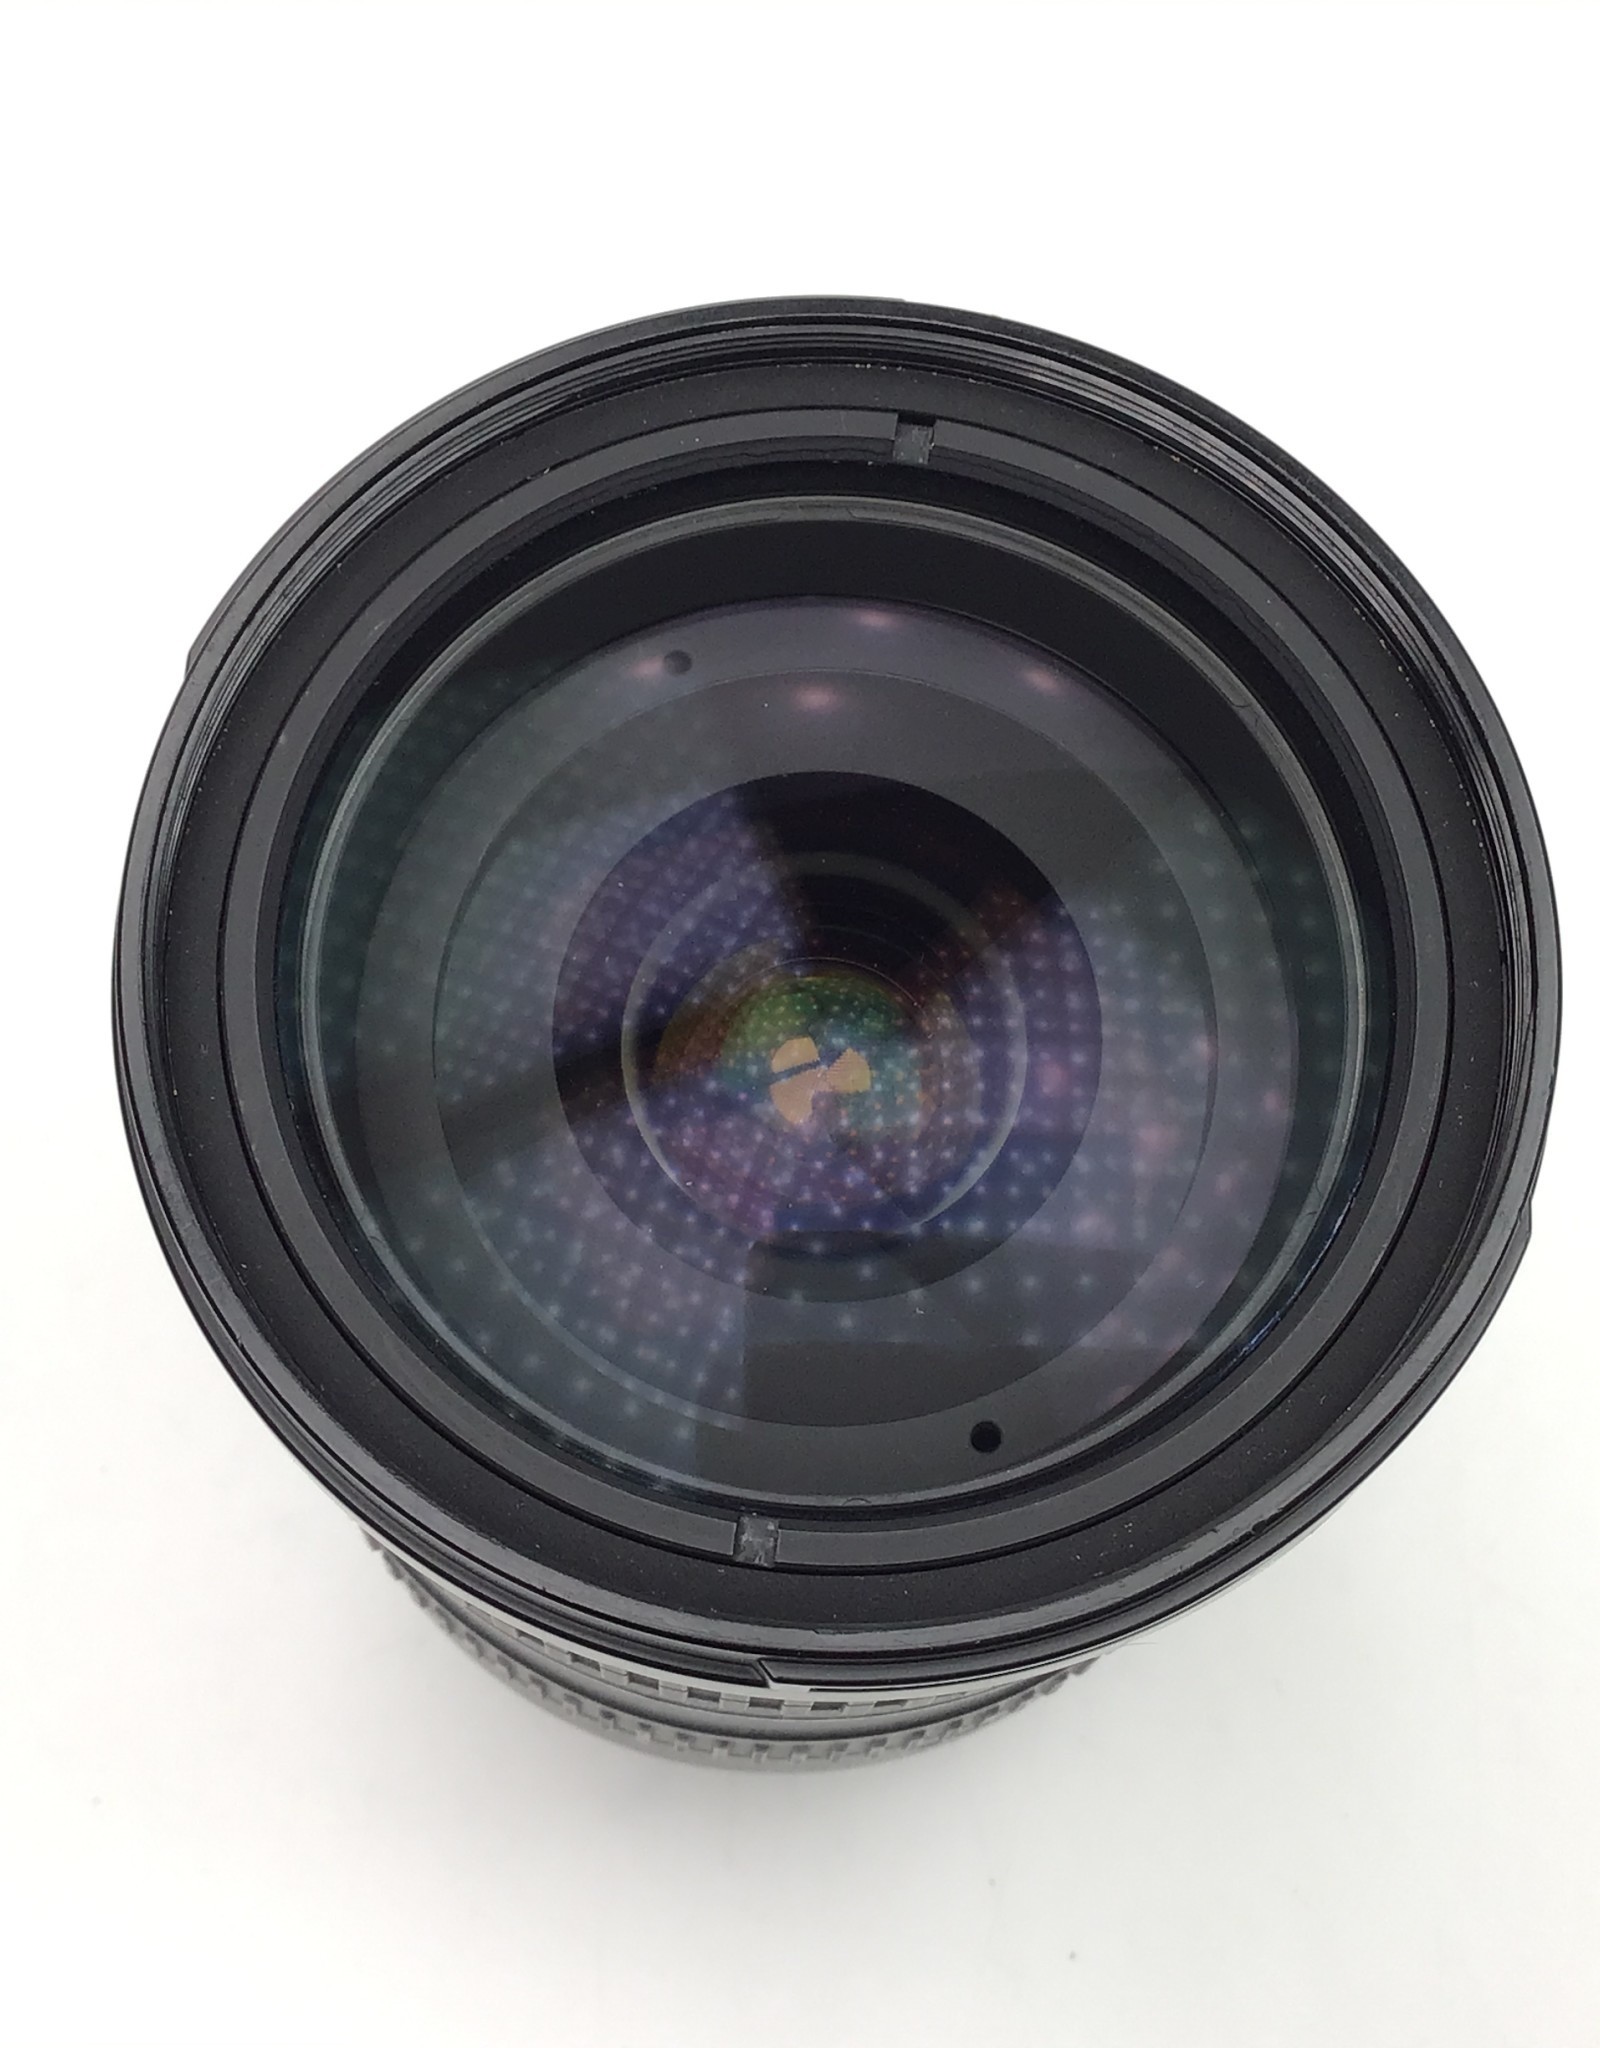 NIKON Nikon AF-S Nikkor 18-200mm f3.5-5.6 G VR DX Lens Used good